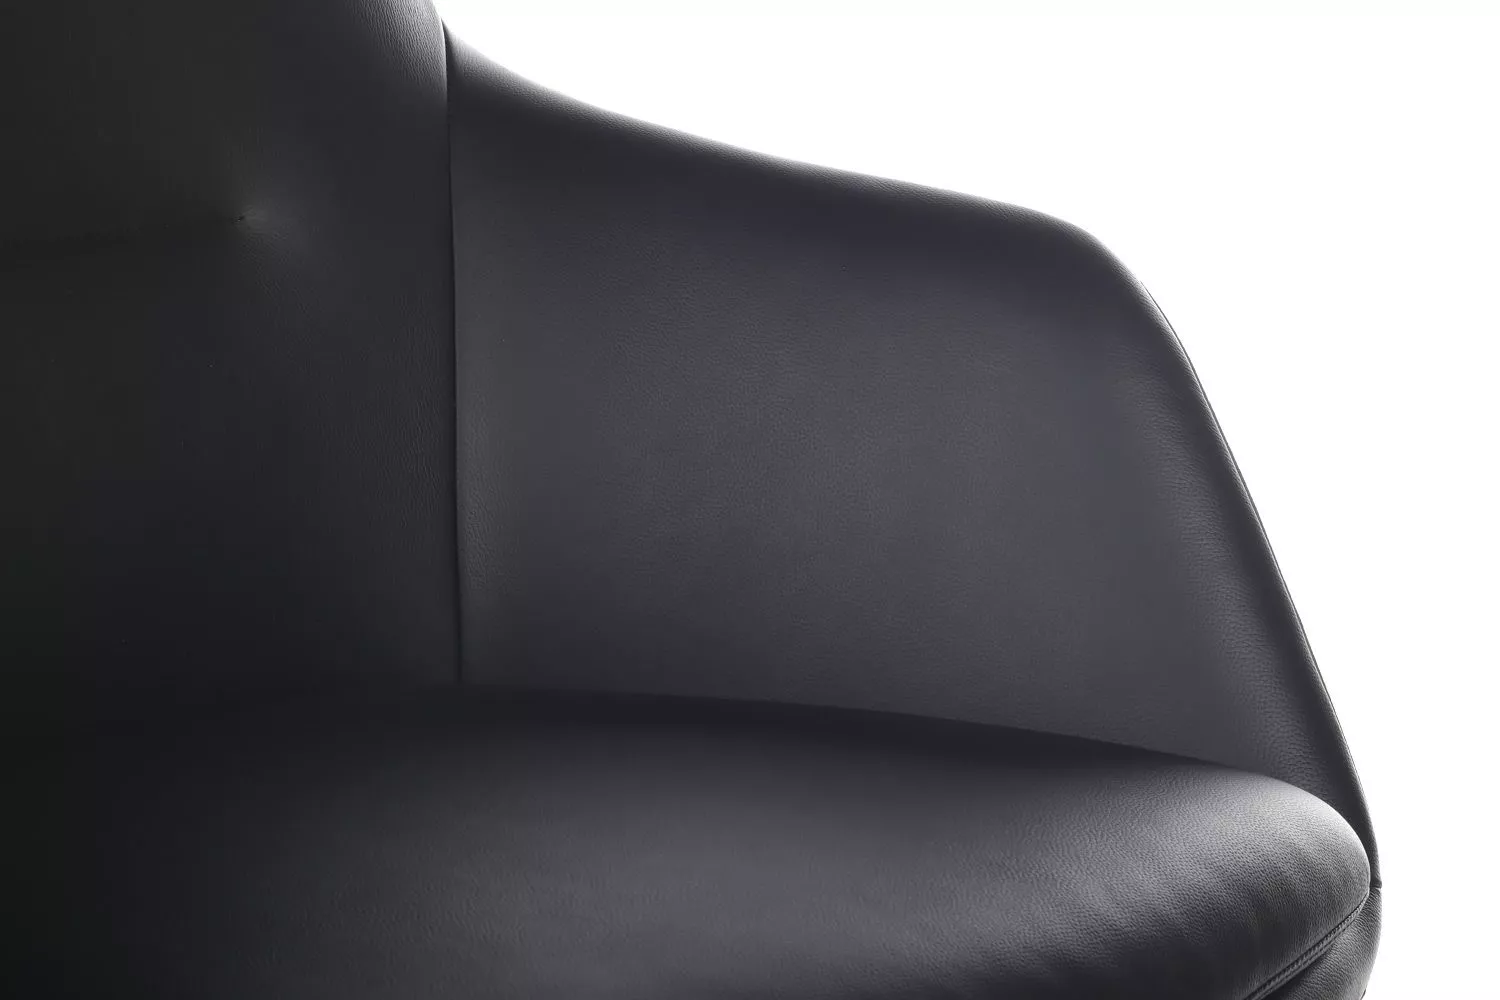 Офисное кресло из натуральной кожи RIVA DESIGN Soul-M (B1908) черный